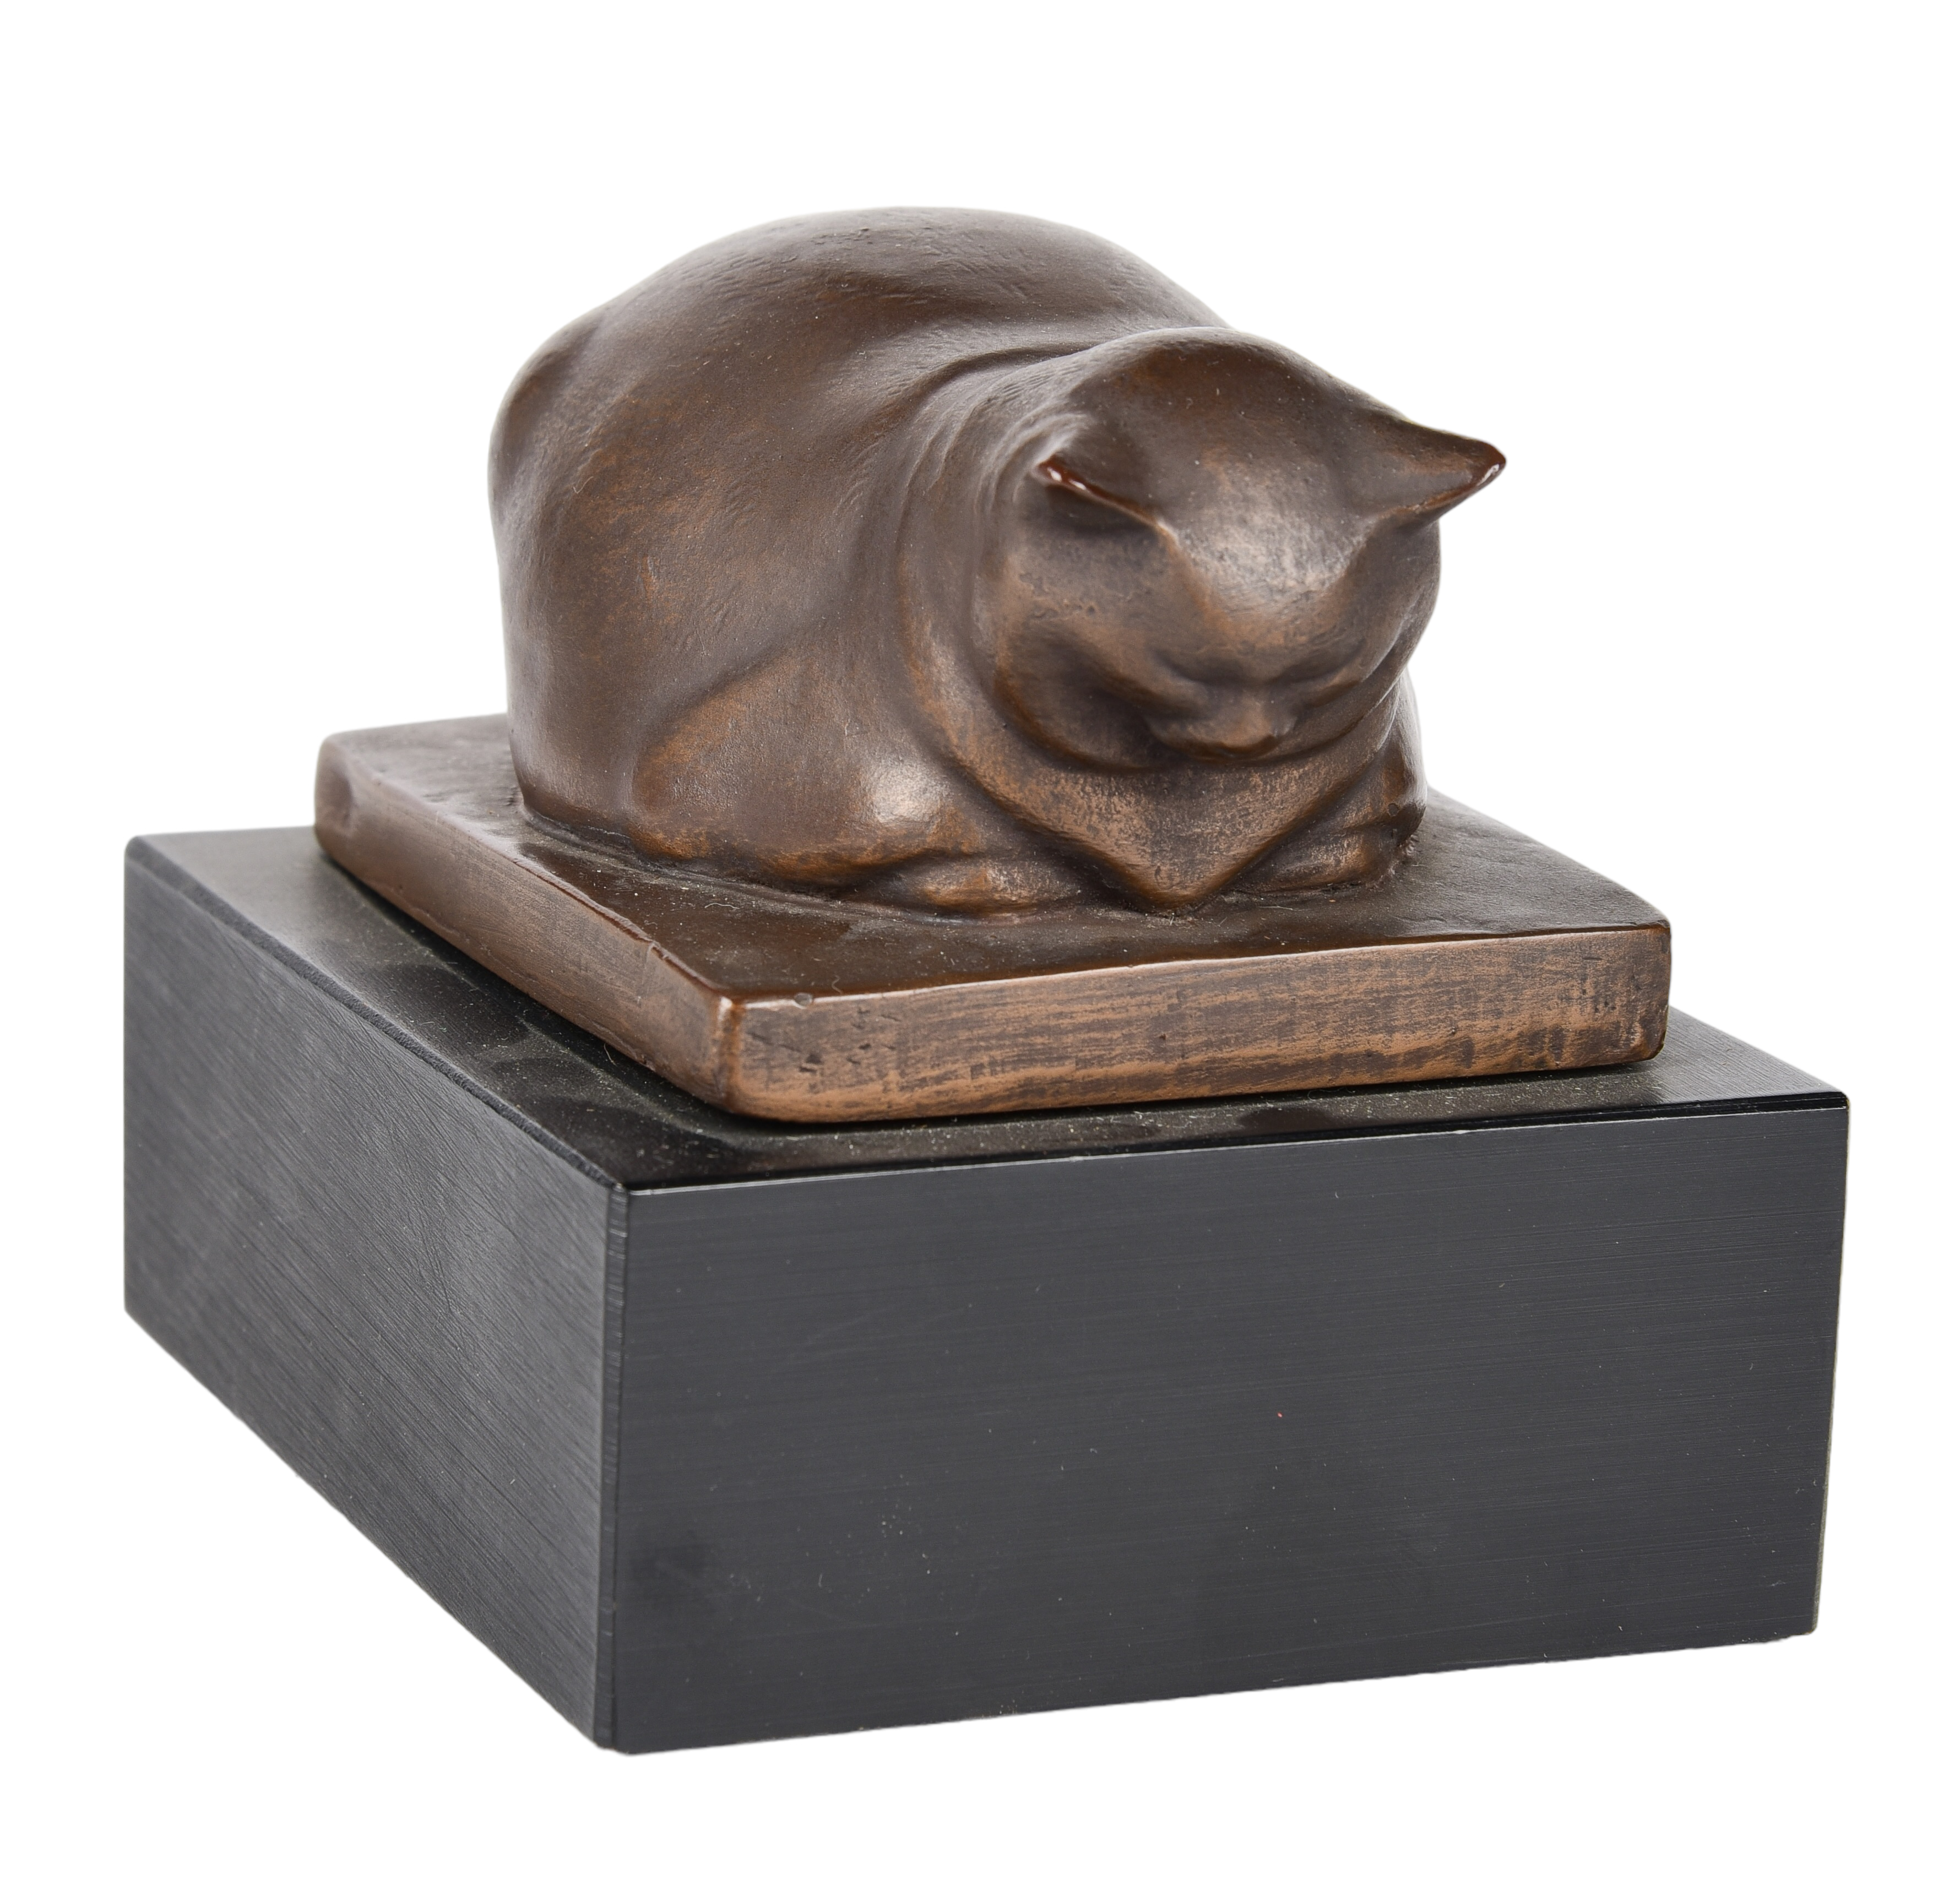 Jane Poupelet cat sculpture Alva 3c67b5